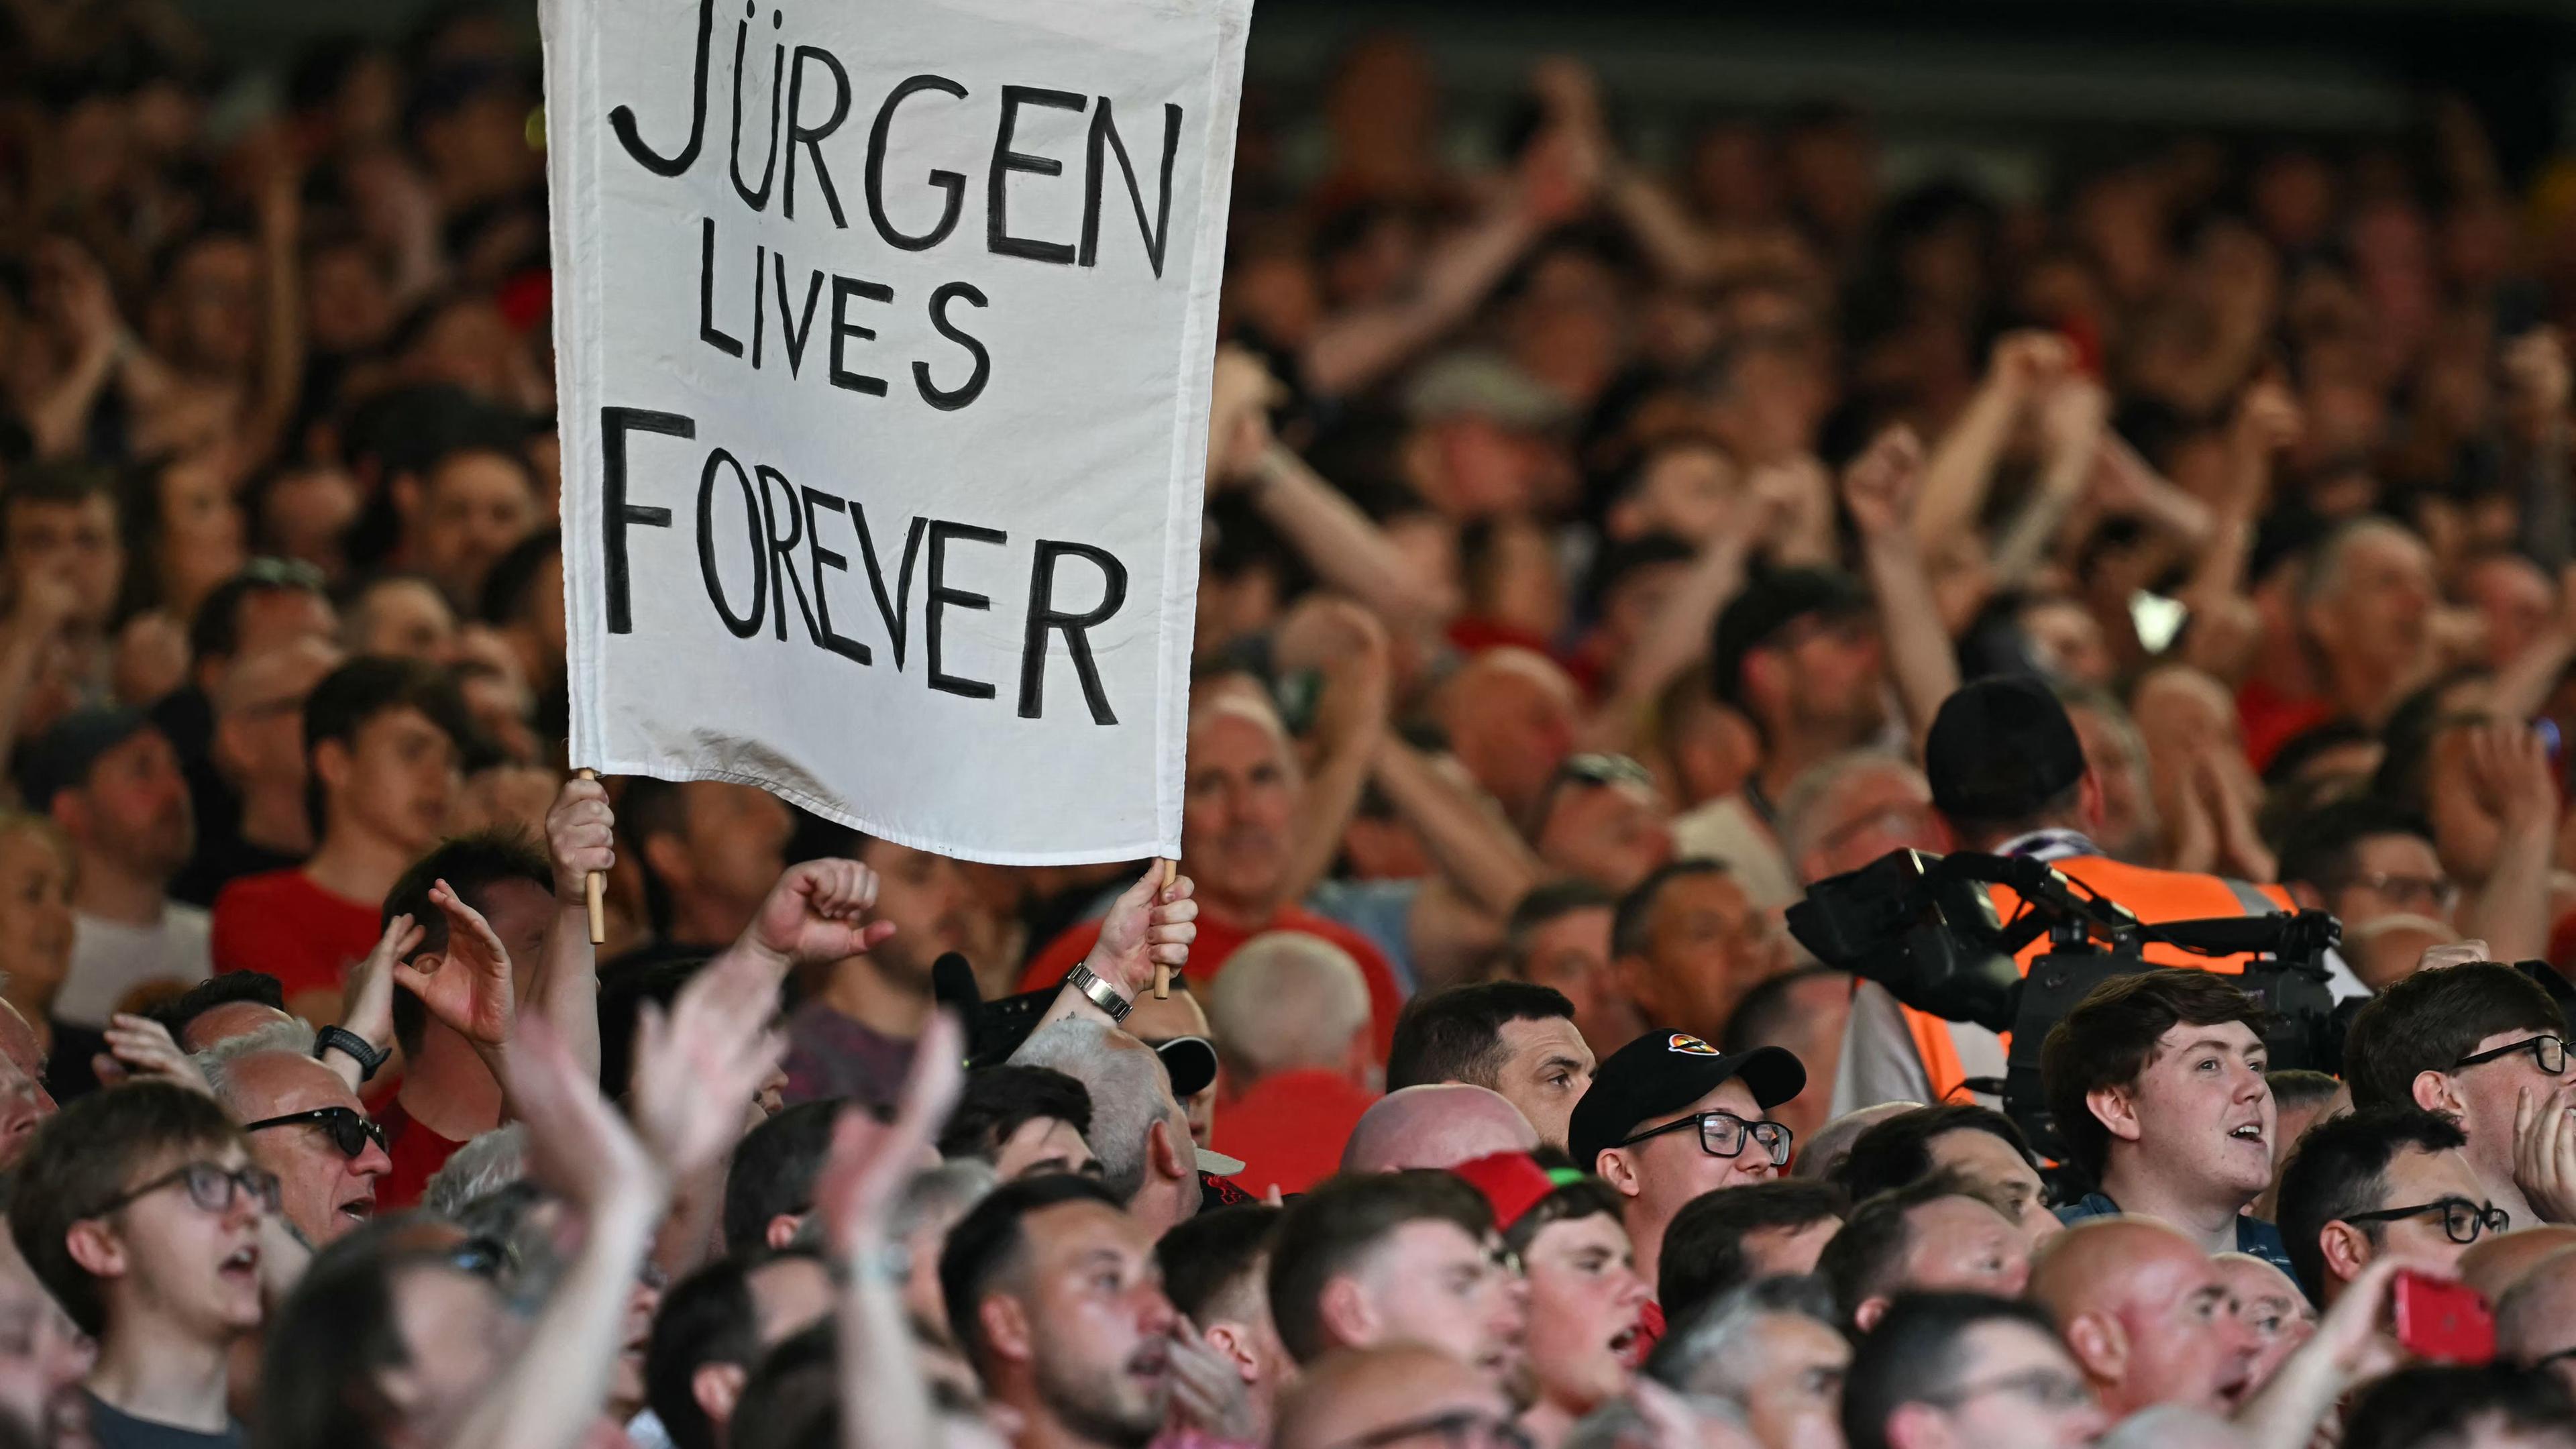 Ein Fan hält ein Banner mit dem Schriftzug "Jürgen lives forever" während dem Spiel von Liverpool und Wolverhampton Wanderers am 19.05.24.